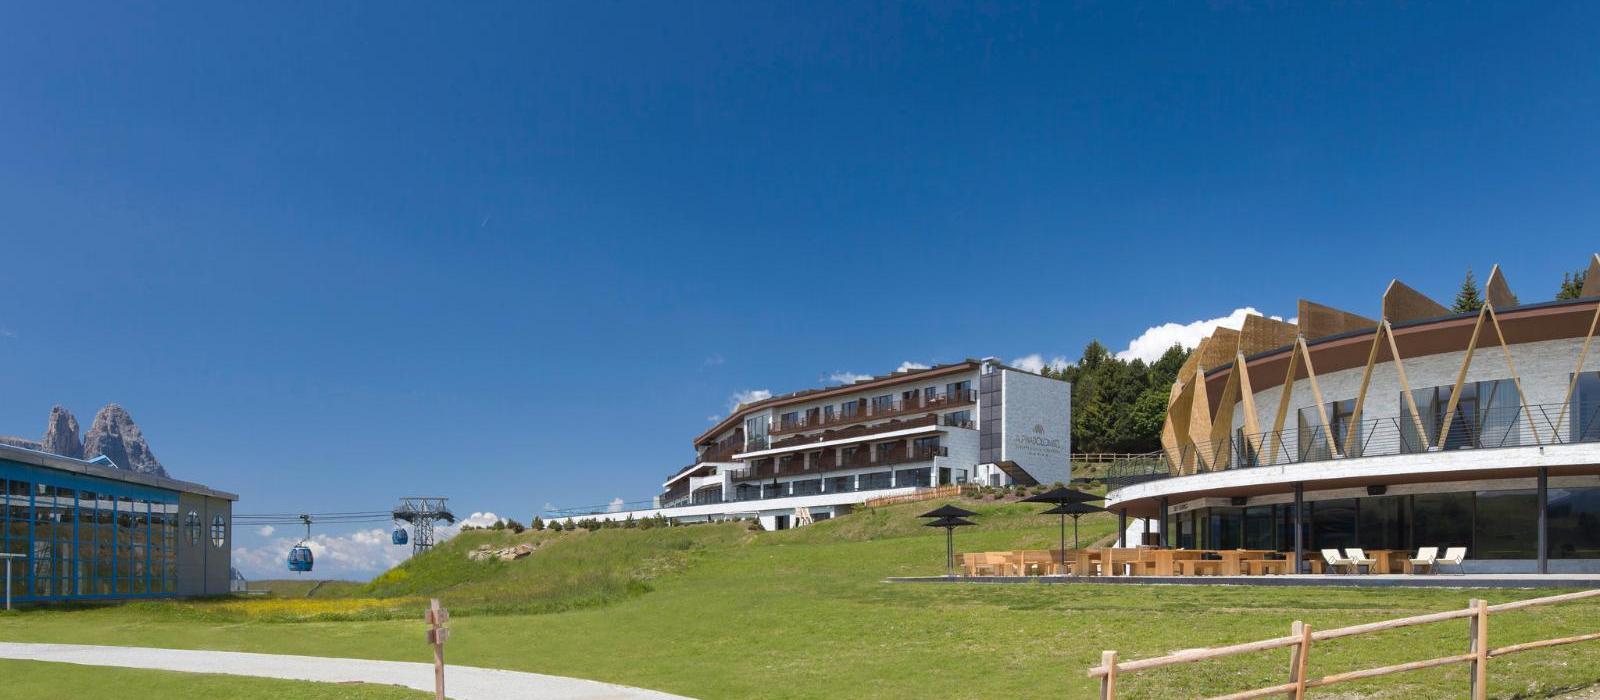 阿尔嫔娜多洛米蒂斯水疗度假酒店(COMO Alpina Dolomites) 图片  www.lhw.cn